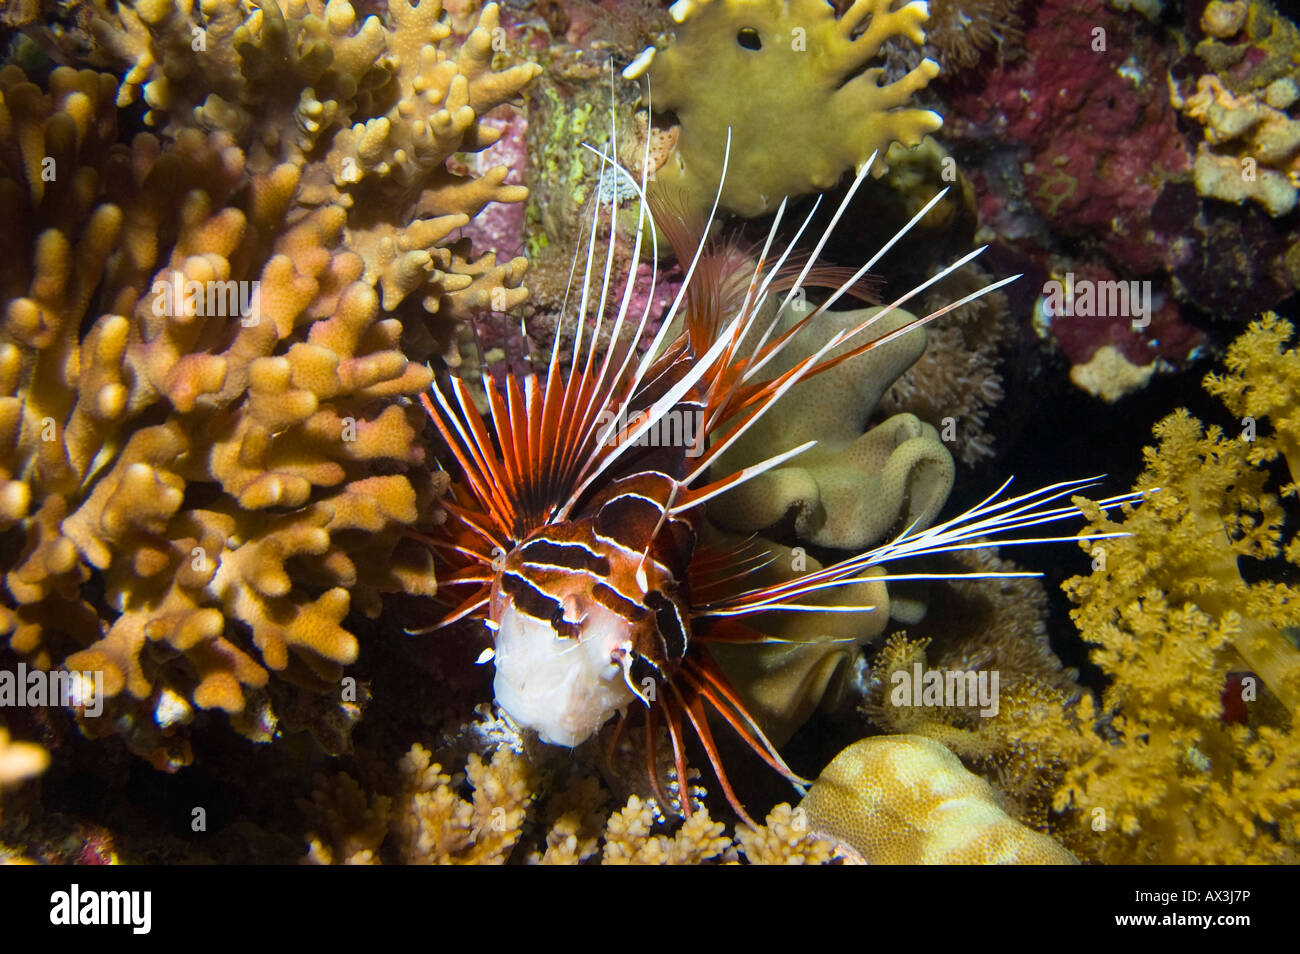 Brillante rote Rotfeuerfische Stockfoto